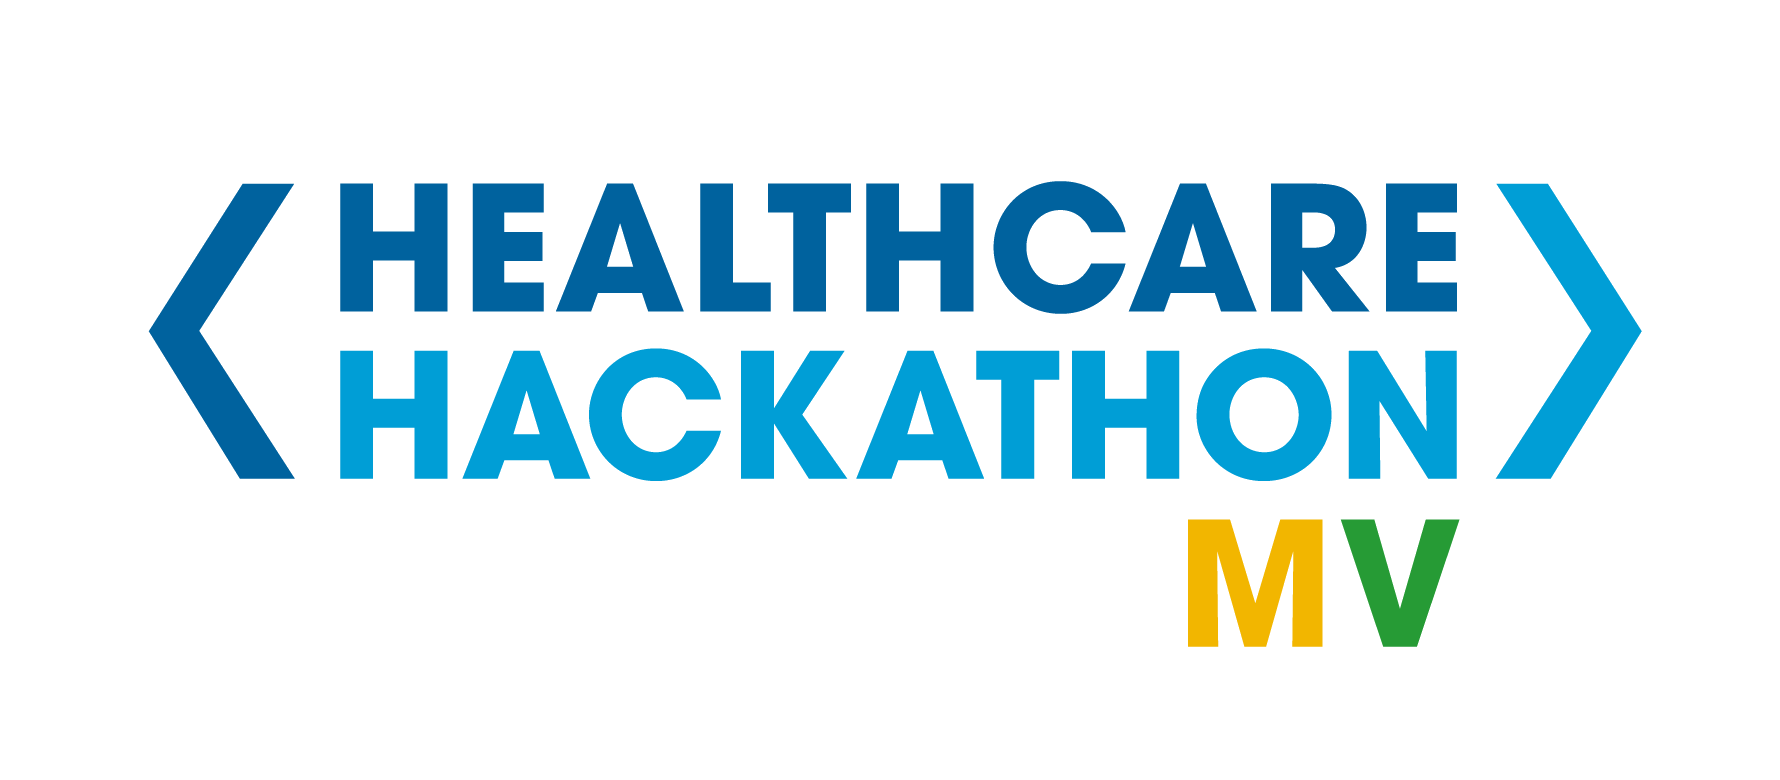 Healthcare Hackathon Referenzlogo